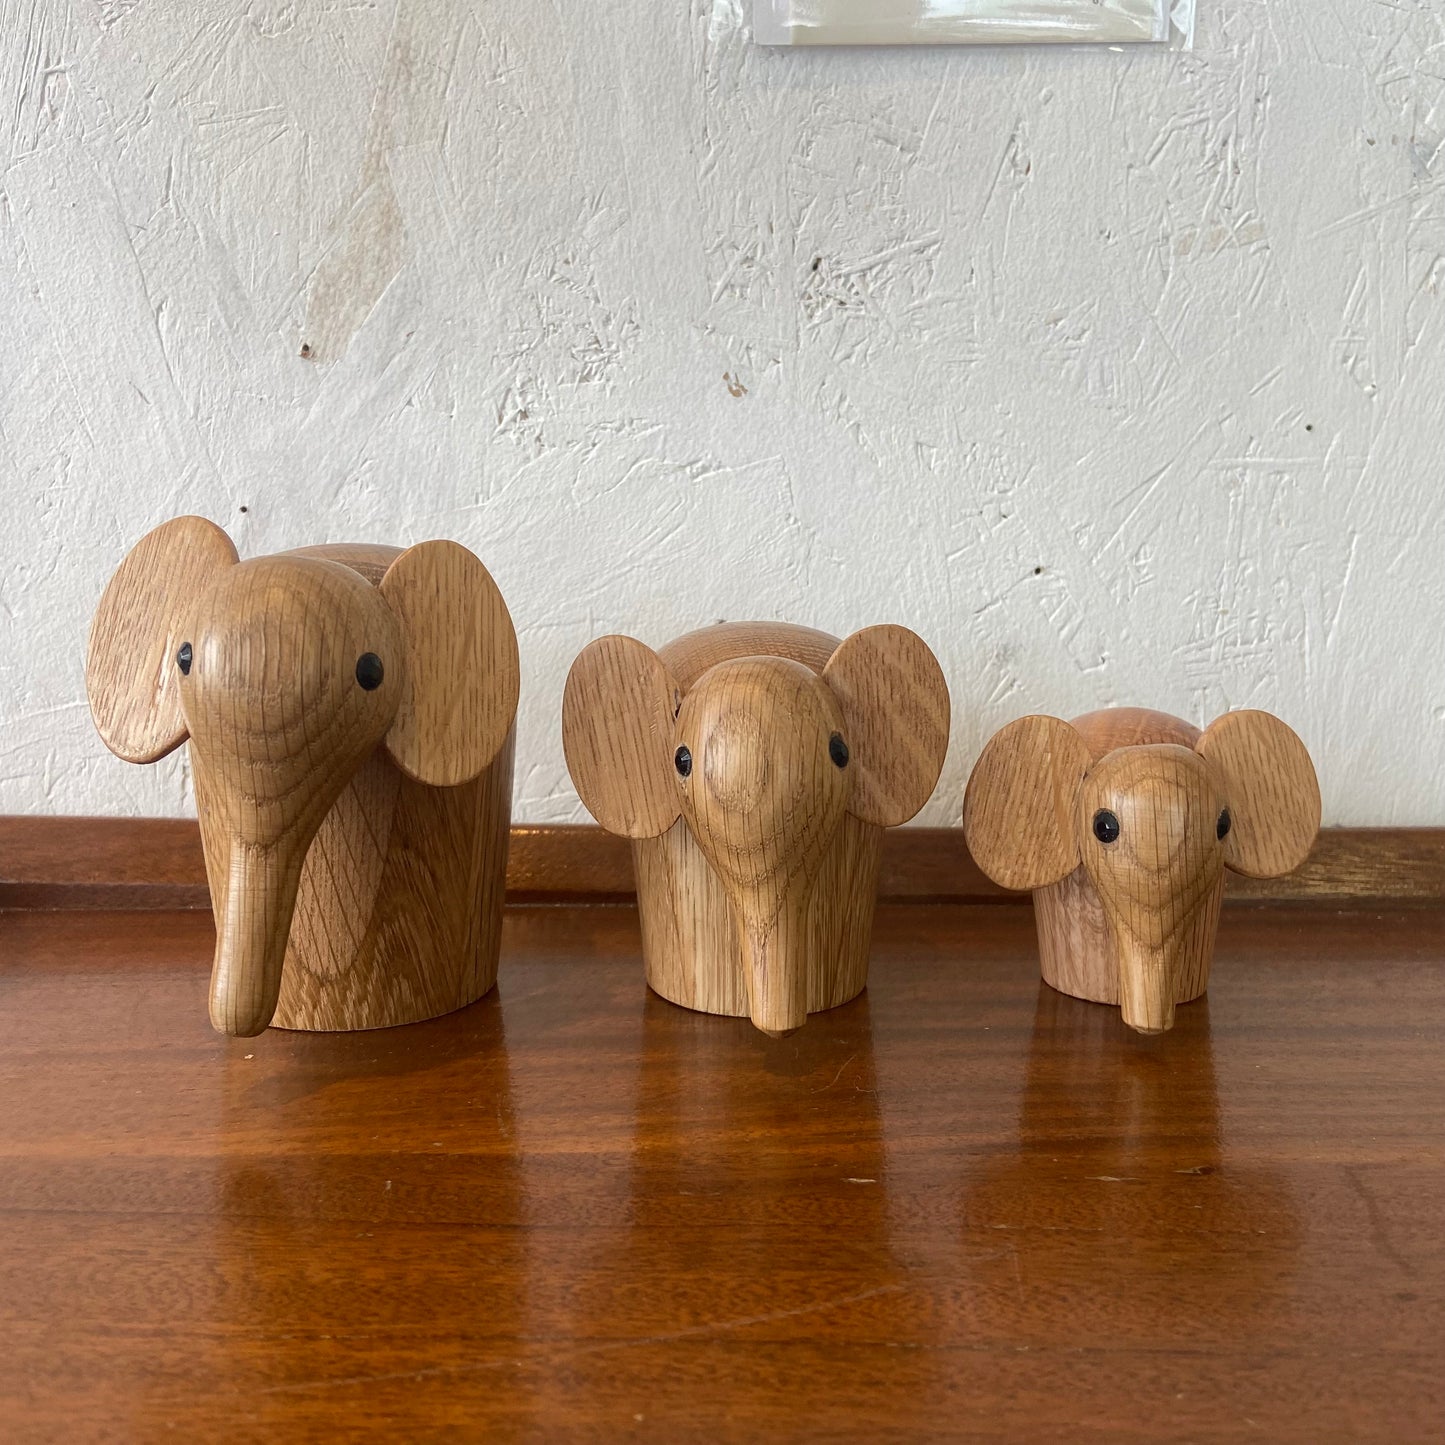 Geoff Meanwell Wooden Elephants